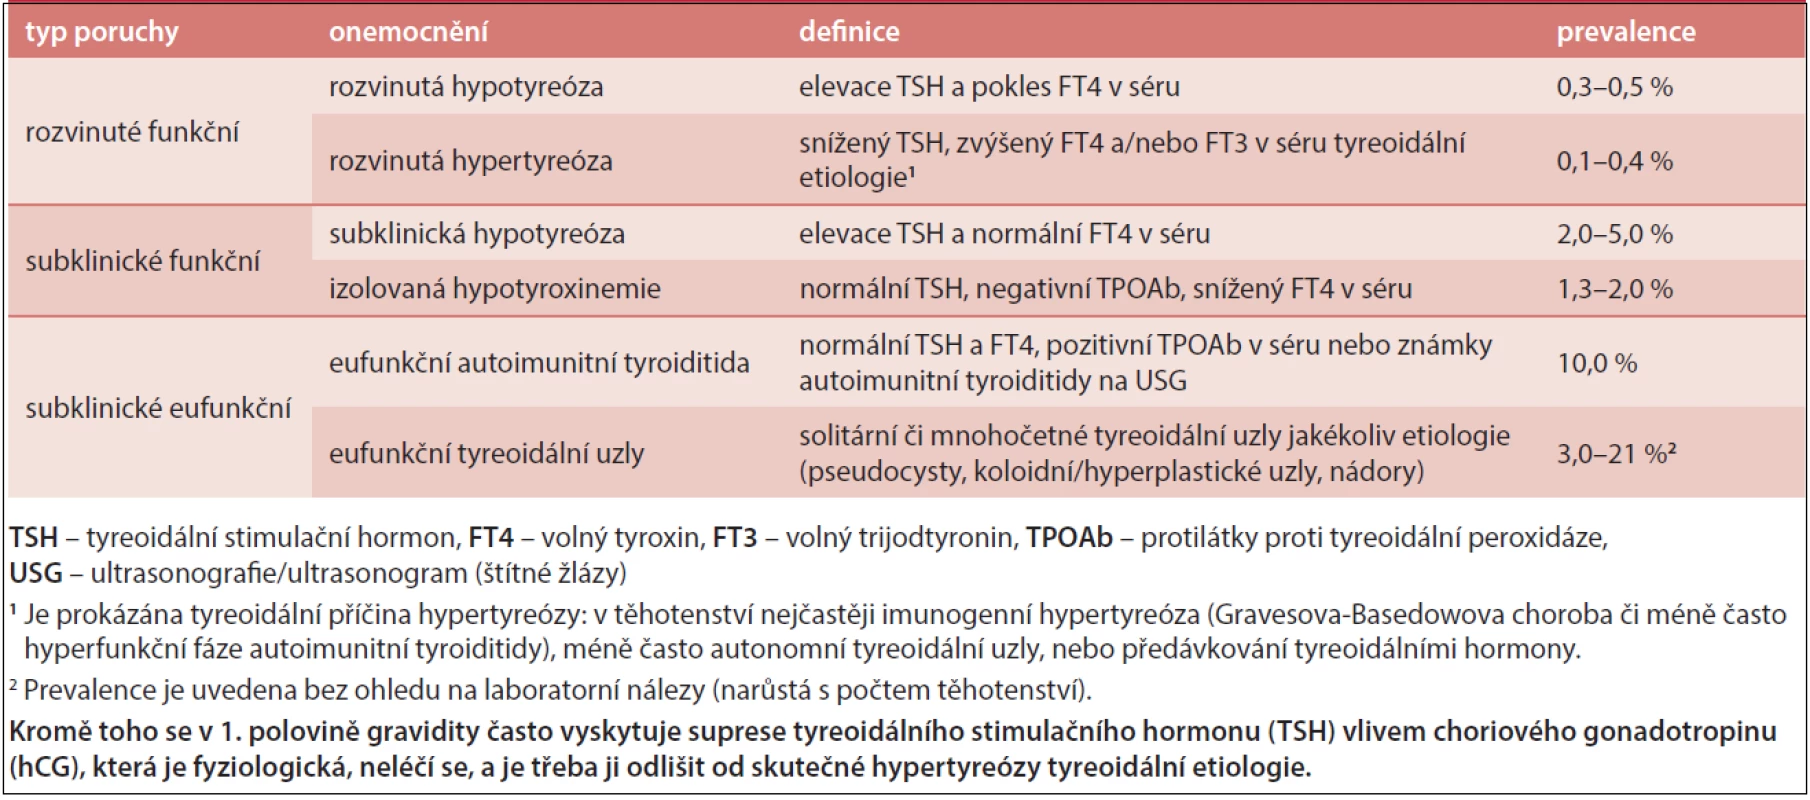 Definice a prevalence tyreopatií v těhotenství, upraveno podle [1,2]